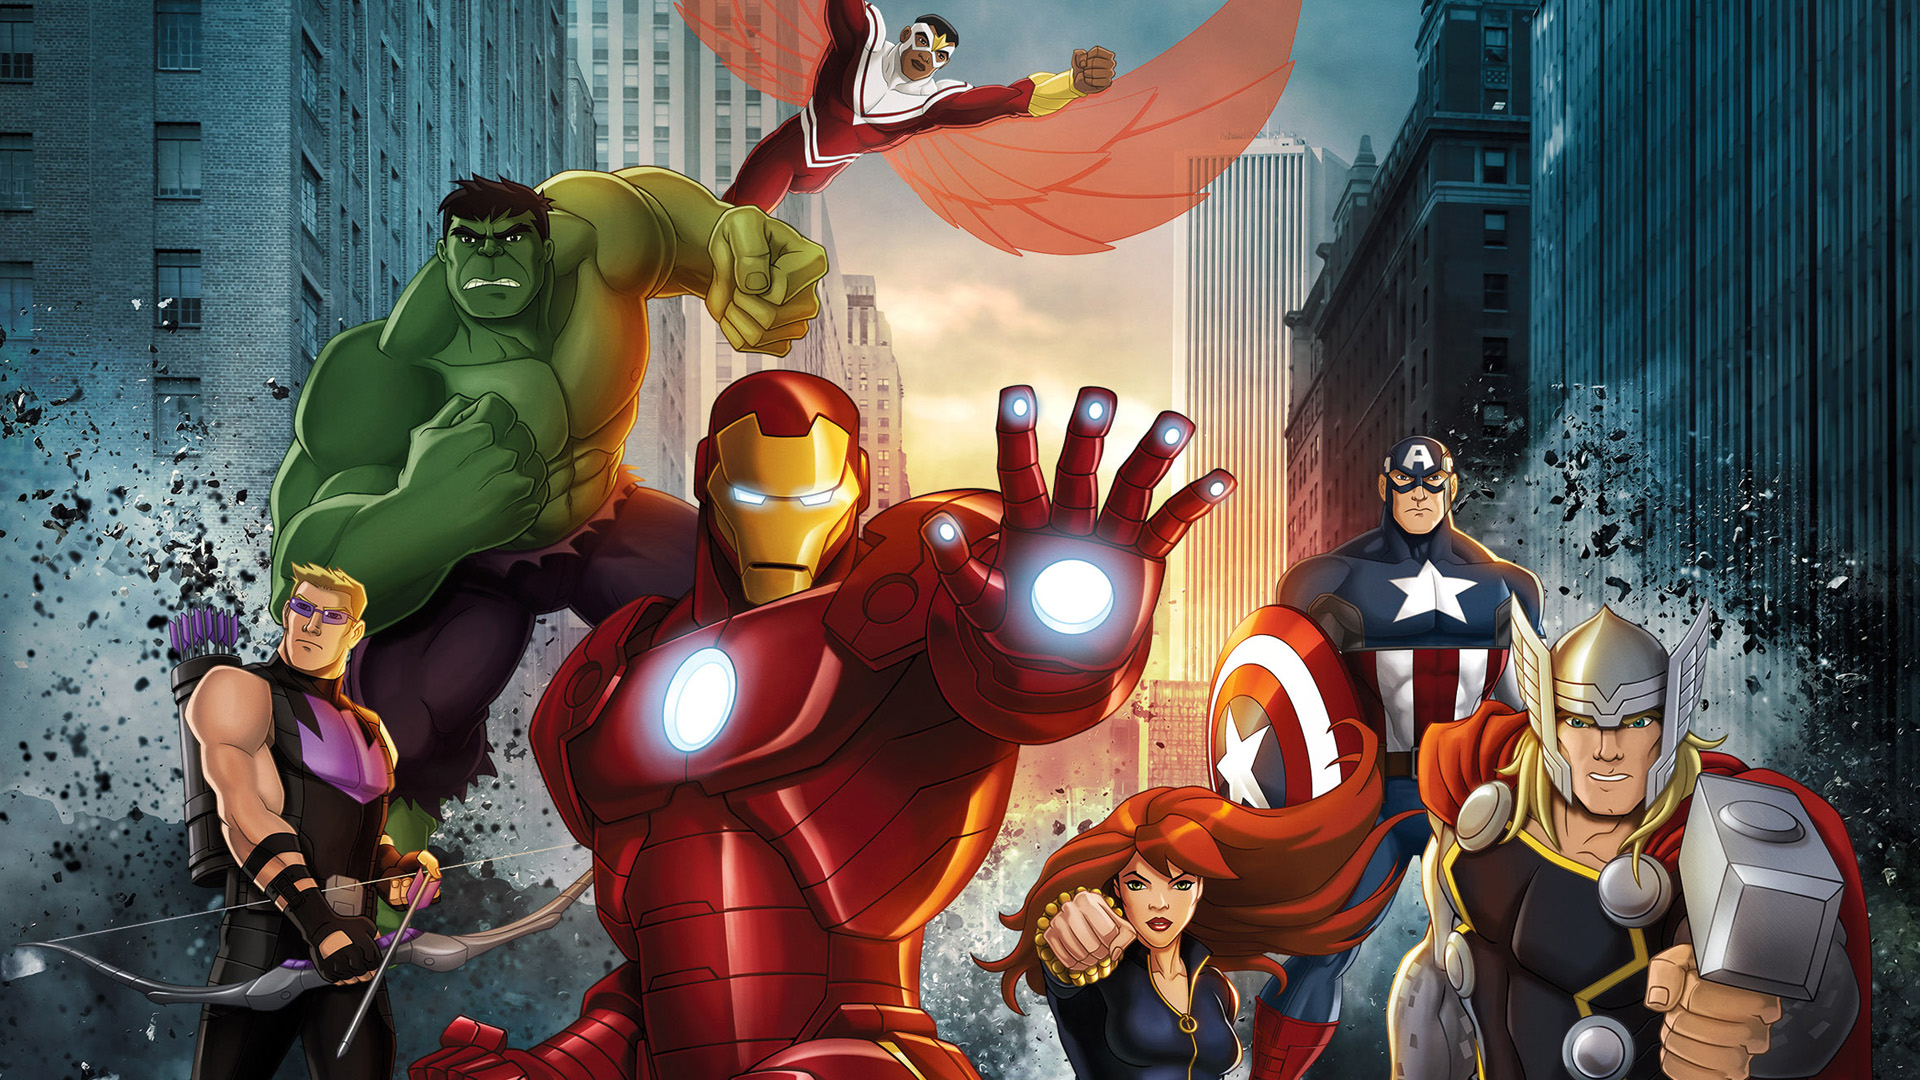 Скачать обои Сбор Мстителей Marvel на телефон бесплатно